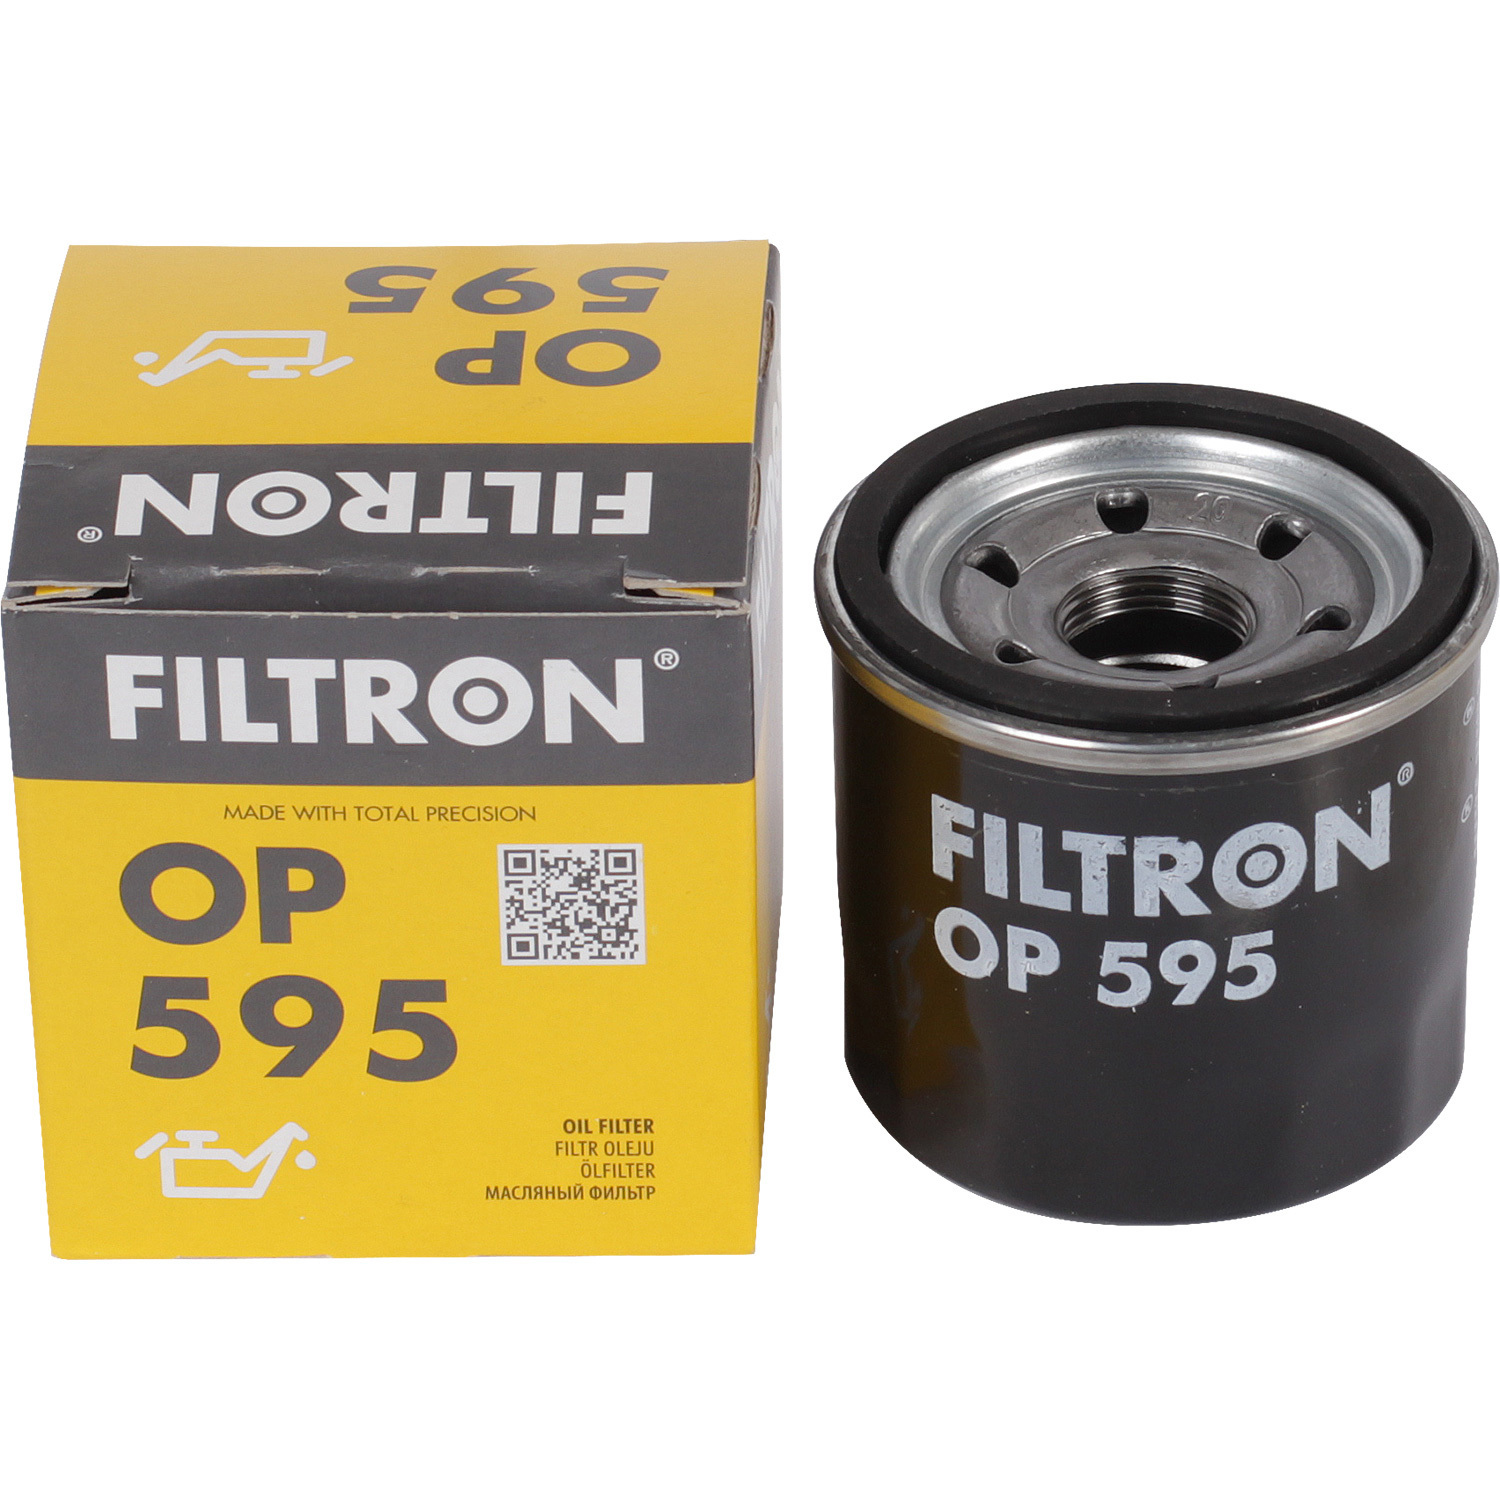 Фильтры Filtron Фильтр масляный Filtron OP595 фильтры filtron фильтр масляный filtron op5201